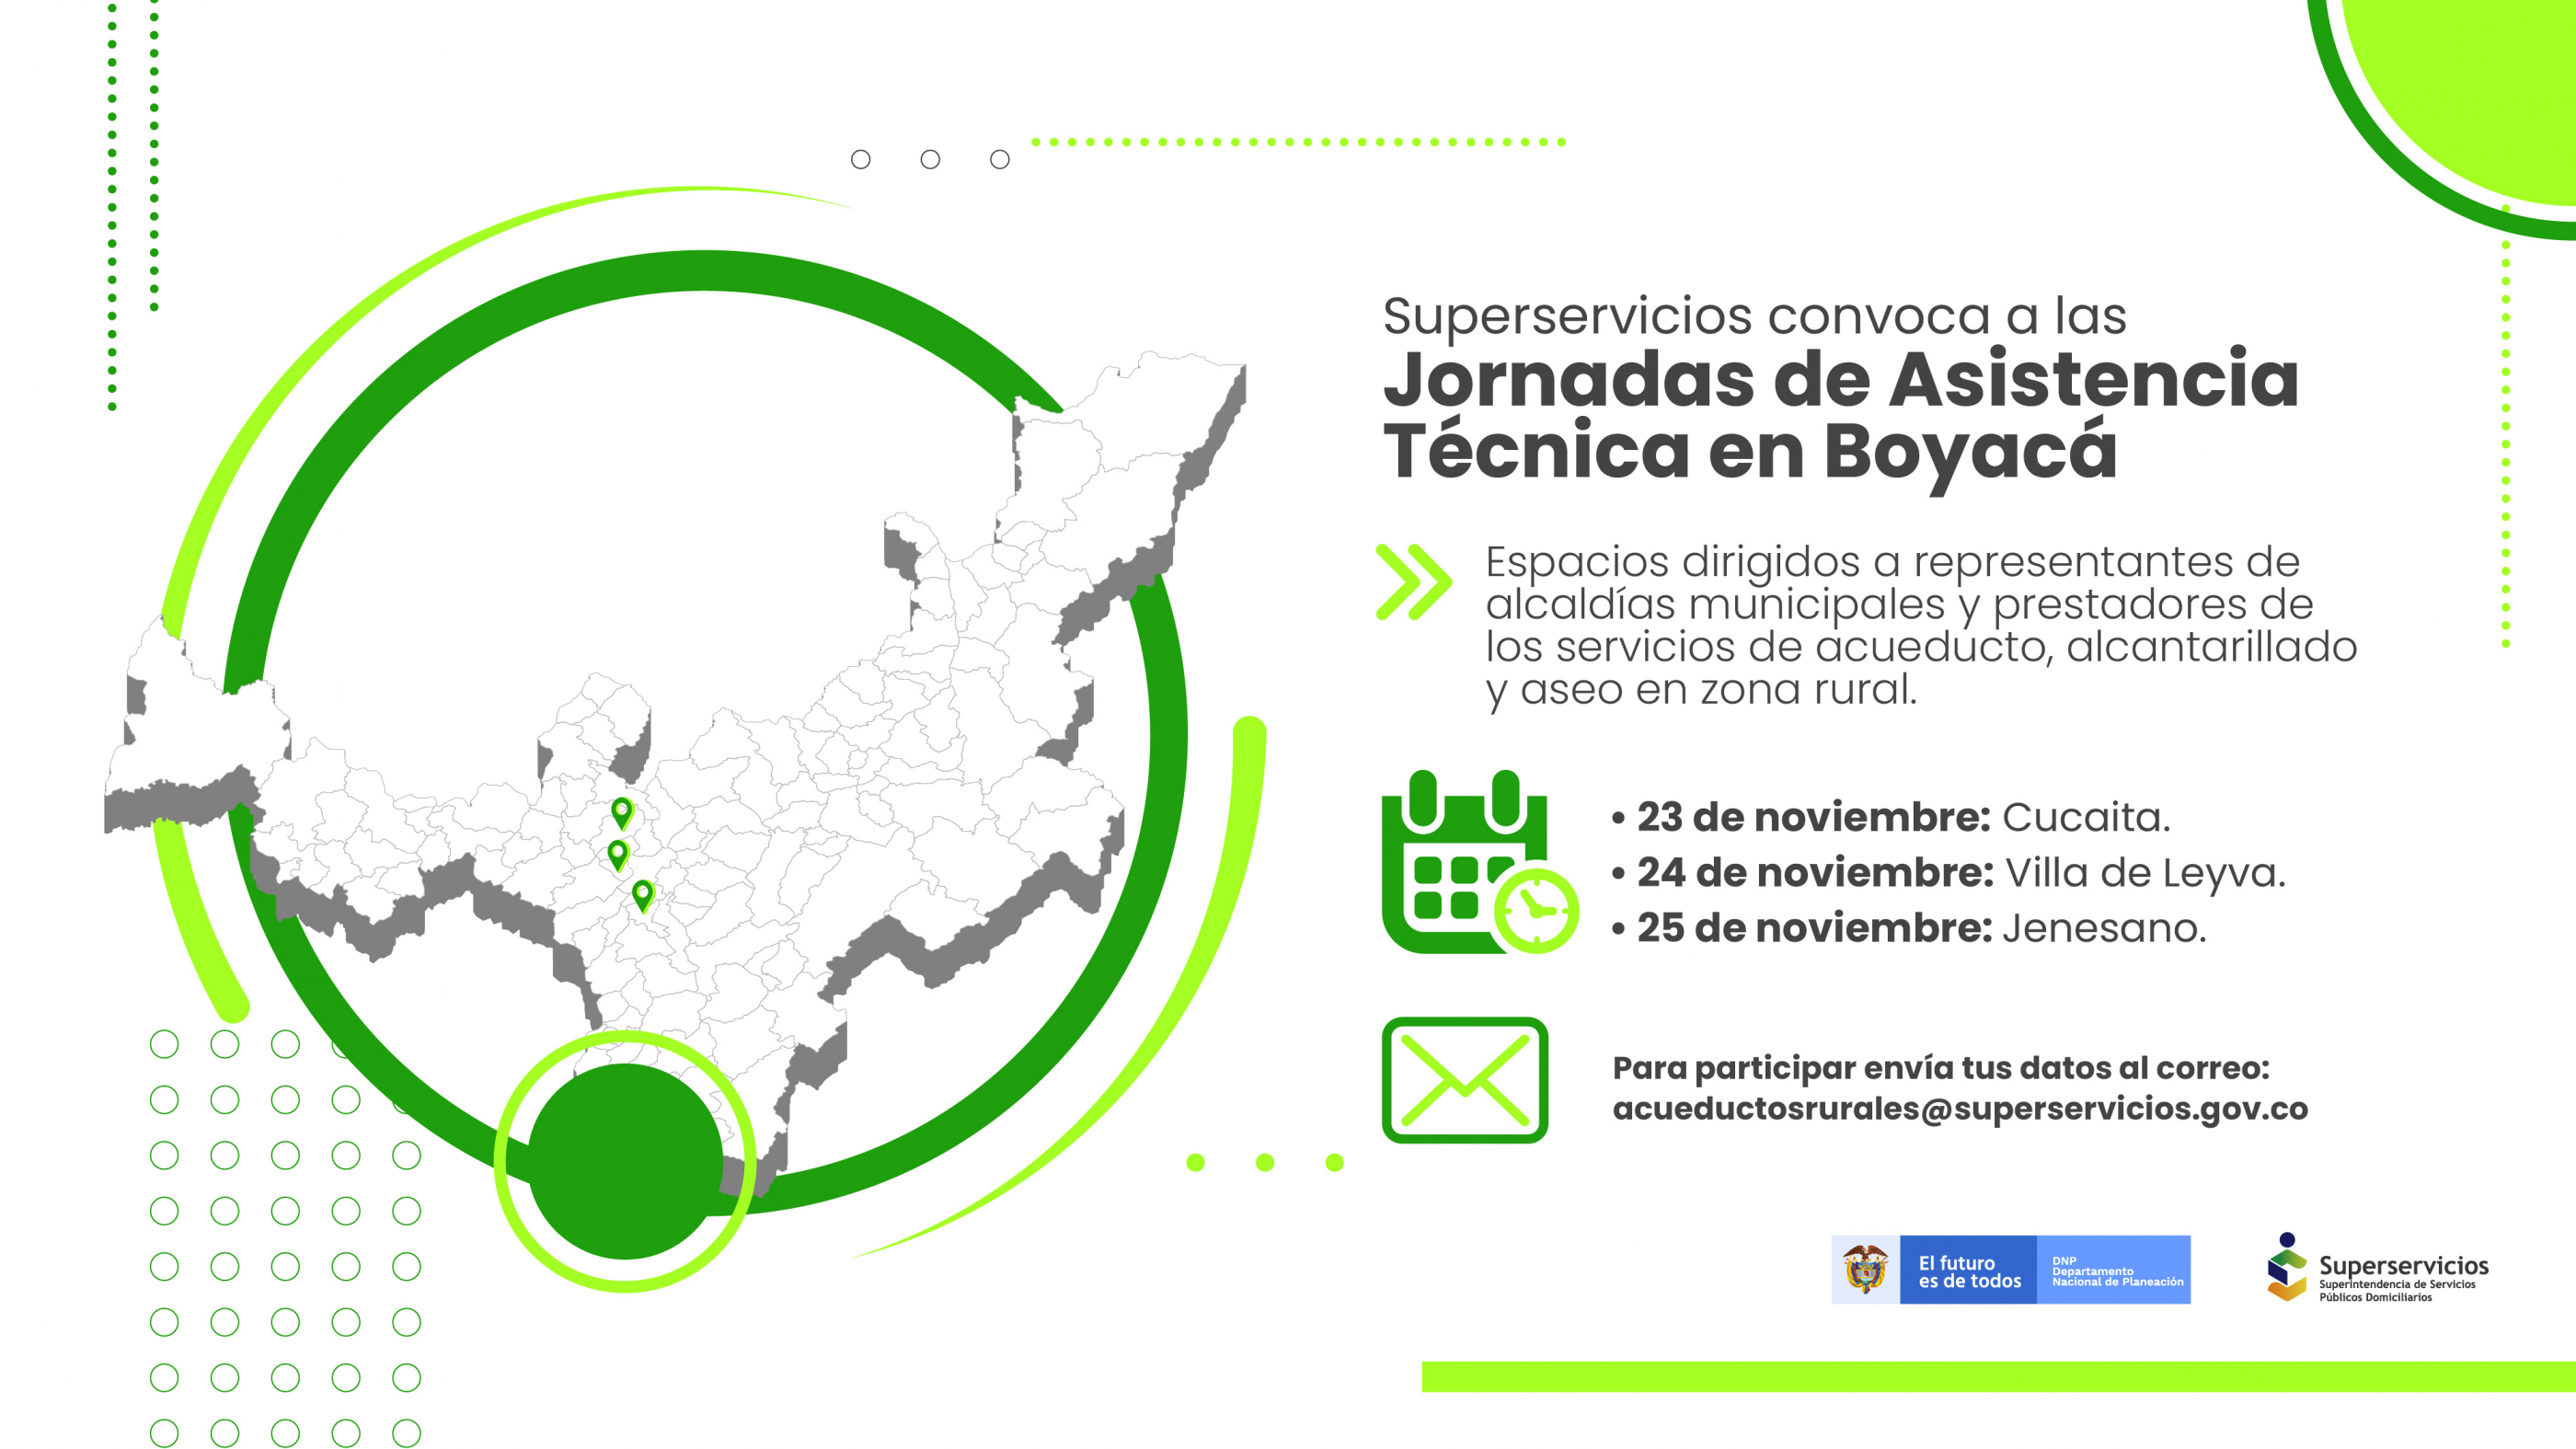 Jornadas de Asistencia Técnica en Boyacá - Jenesano
